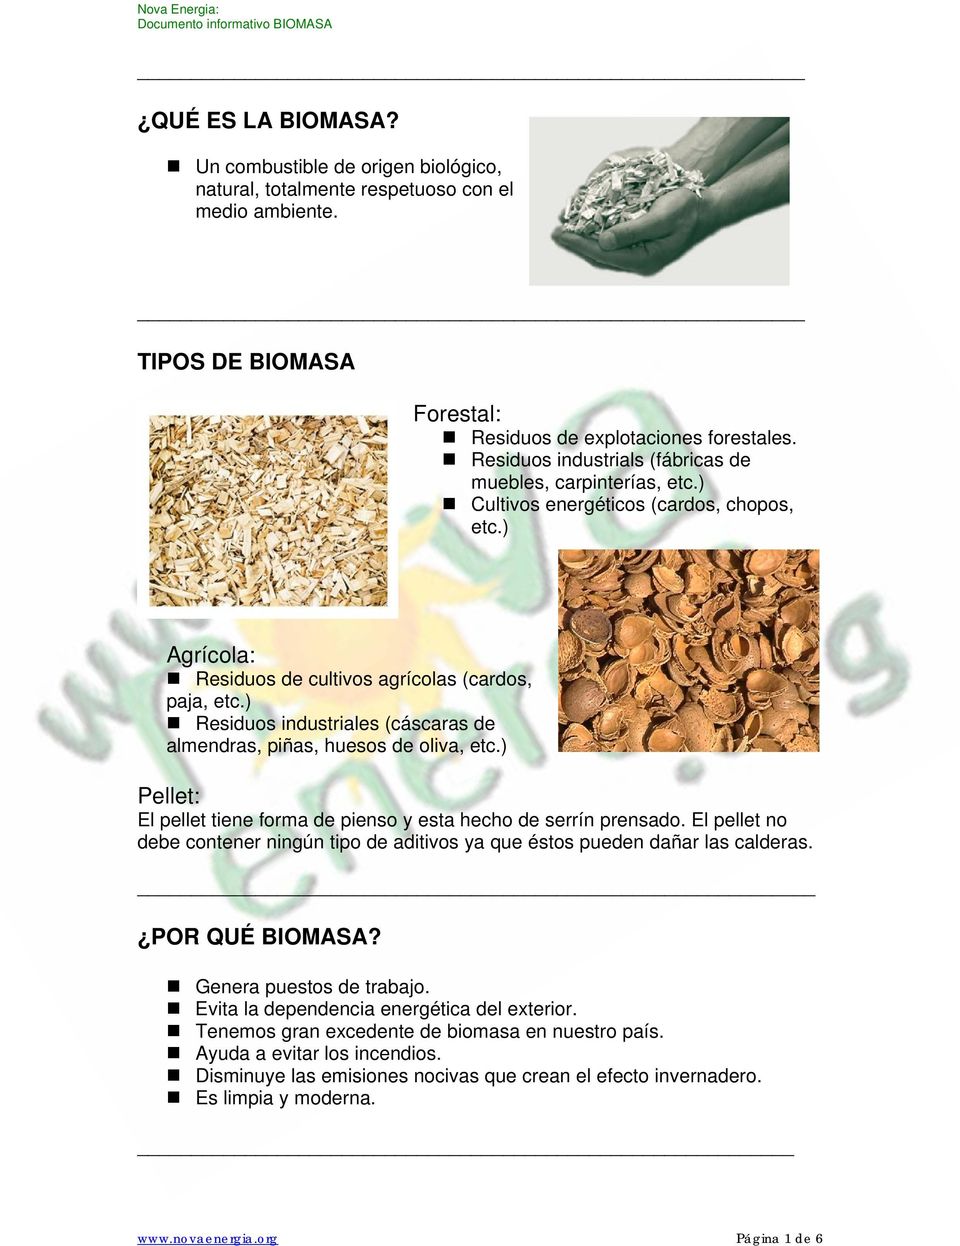 ) Residuos industriales (cáscaras de almendras, piñas, huesos de oliva, etc.) Pellet: El pellet tiene forma de pienso y esta hecho de serrín prensado.